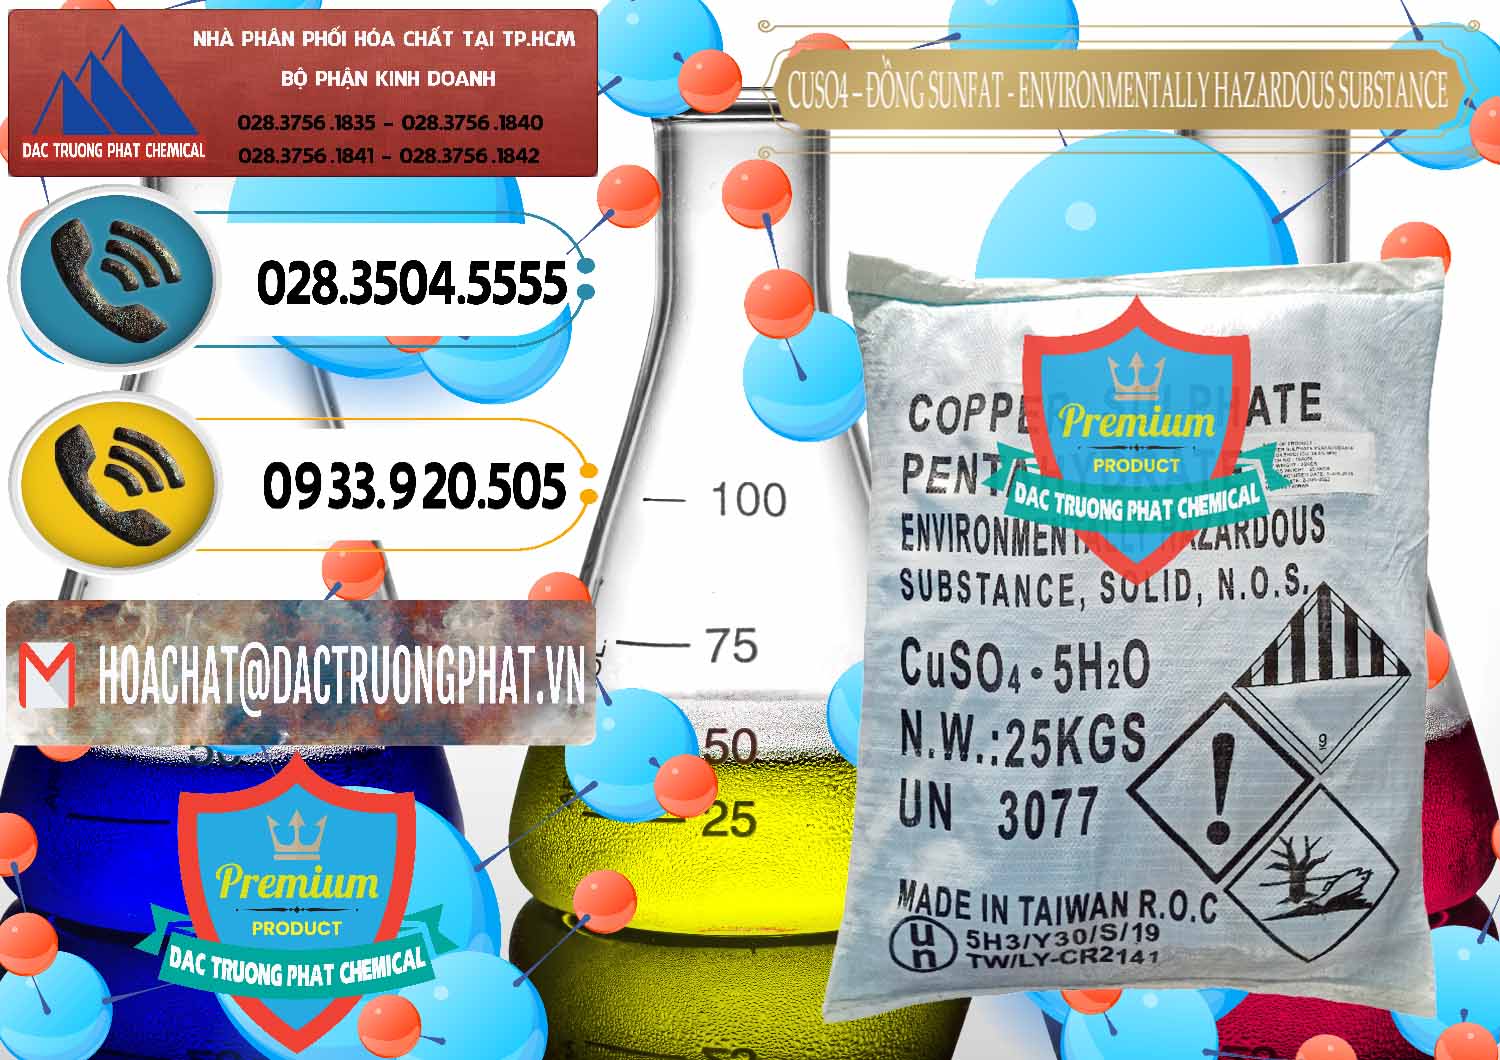 Đơn vị chuyên bán và cung cấp CuSO4 – Đồng Sunfat Đài Loan Taiwan - 0059 - Đơn vị chuyên bán _ phân phối hóa chất tại TP.HCM - hoachatdetnhuom.vn